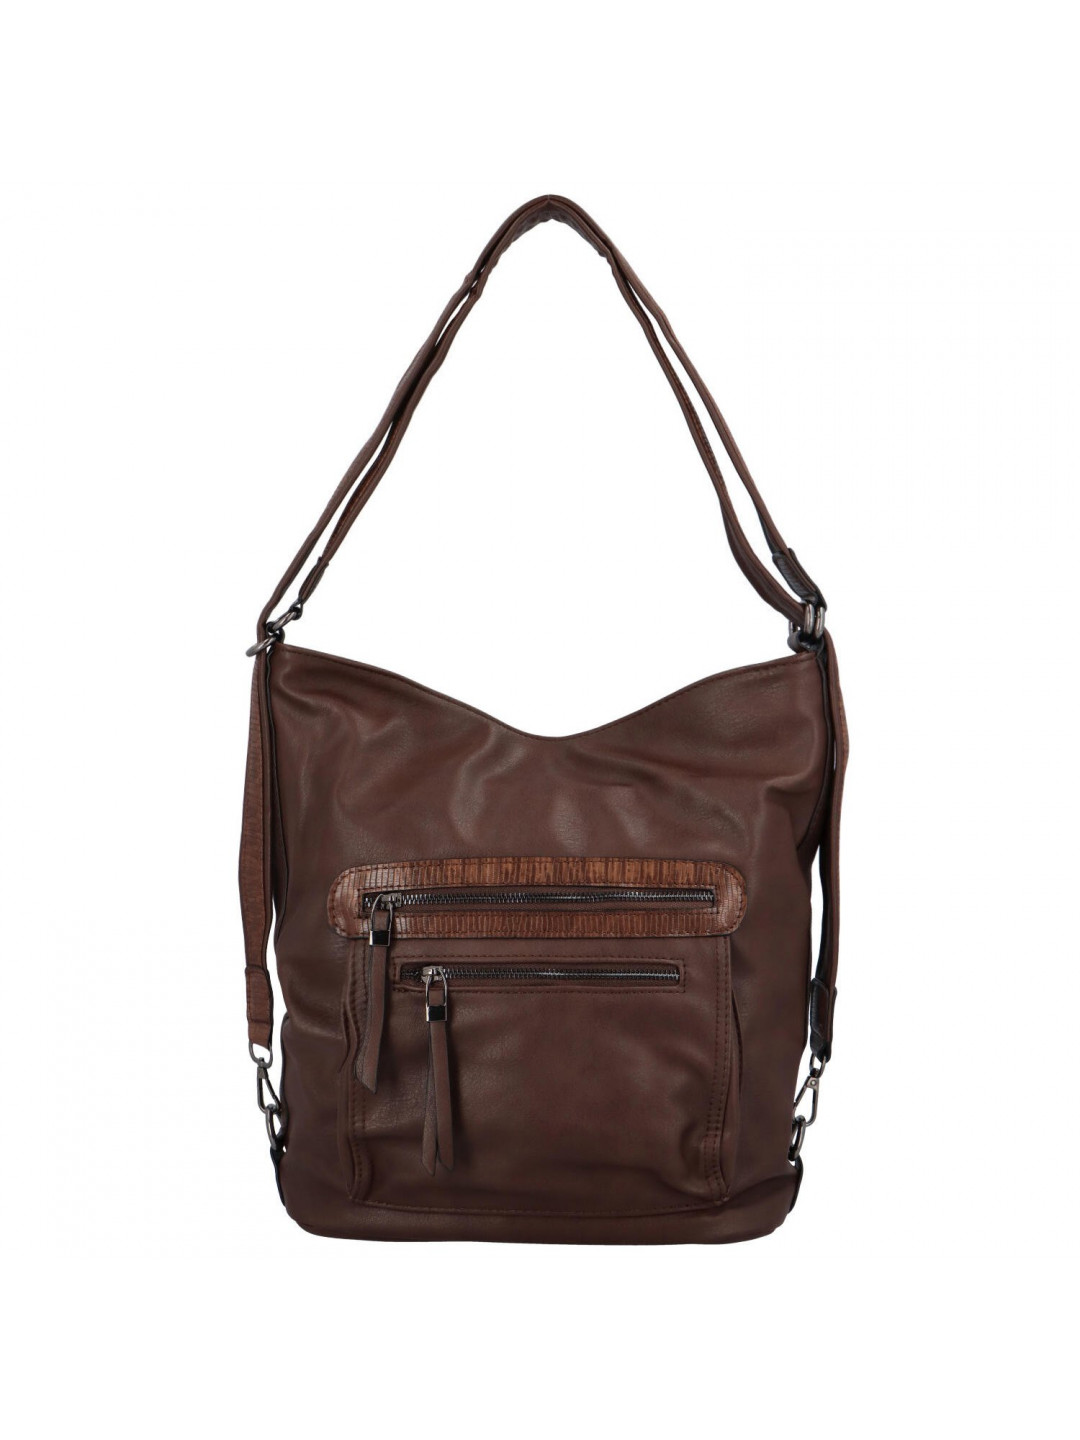 Dámská kabelka přes rameno hnědá – Romina & Co Bags Beatrice